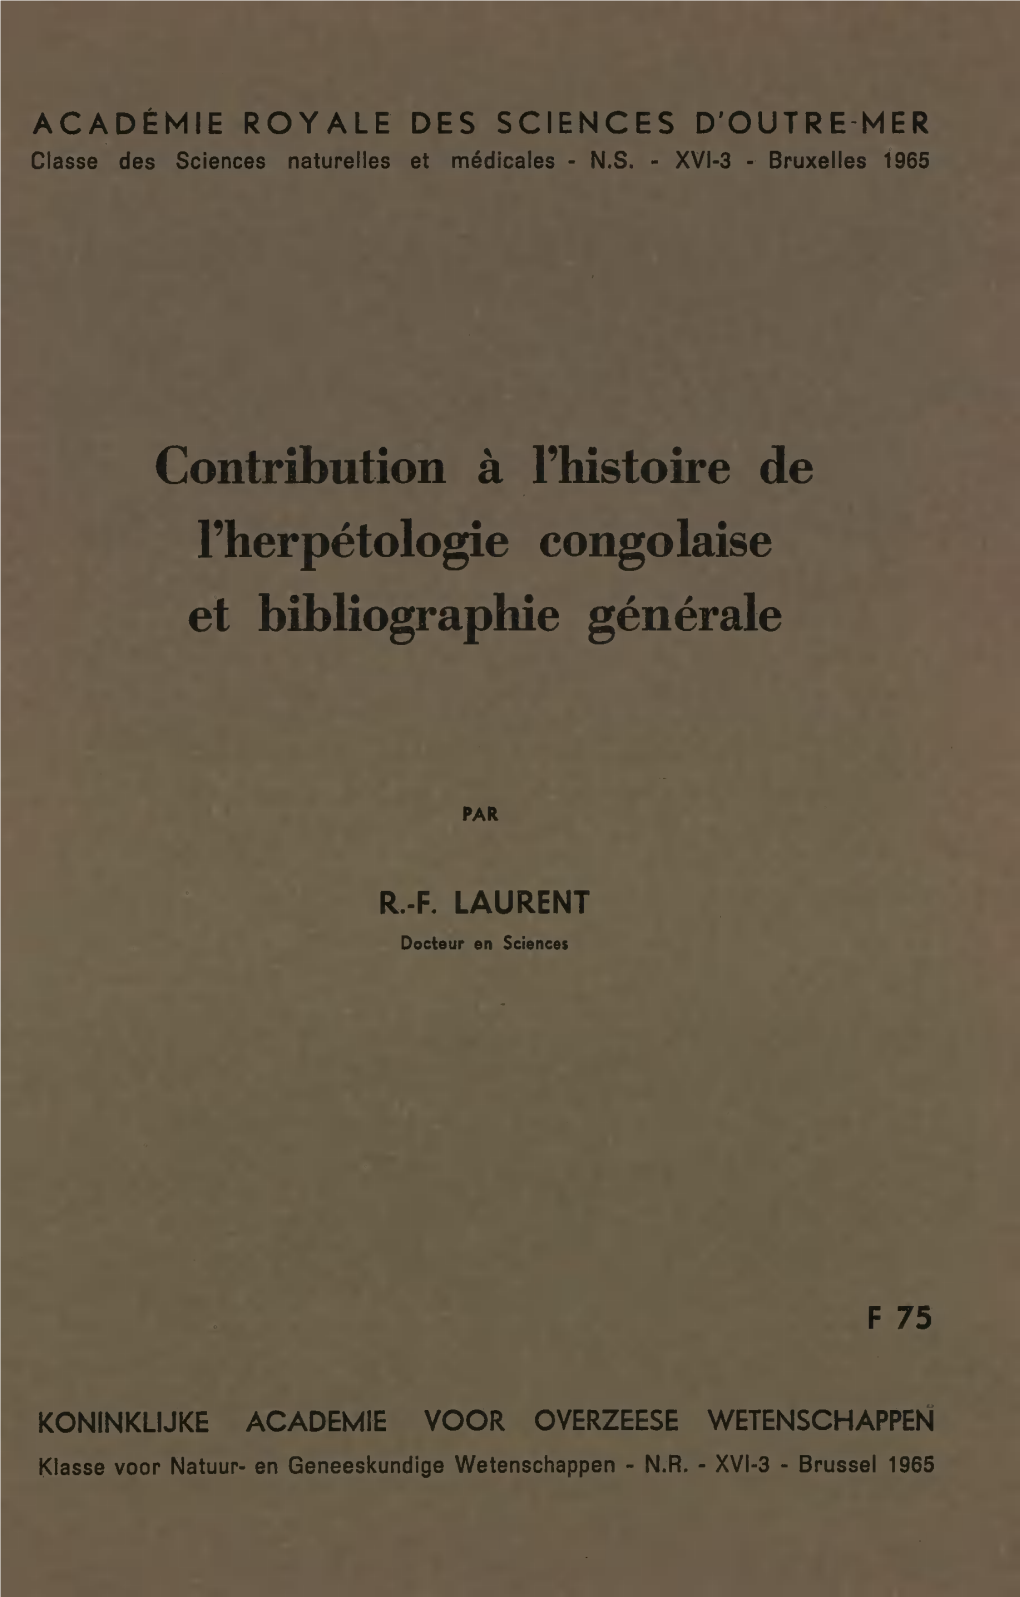 Contribution À Fhistoire De Fherpétologie Congolaise Et Bibliographie Générale